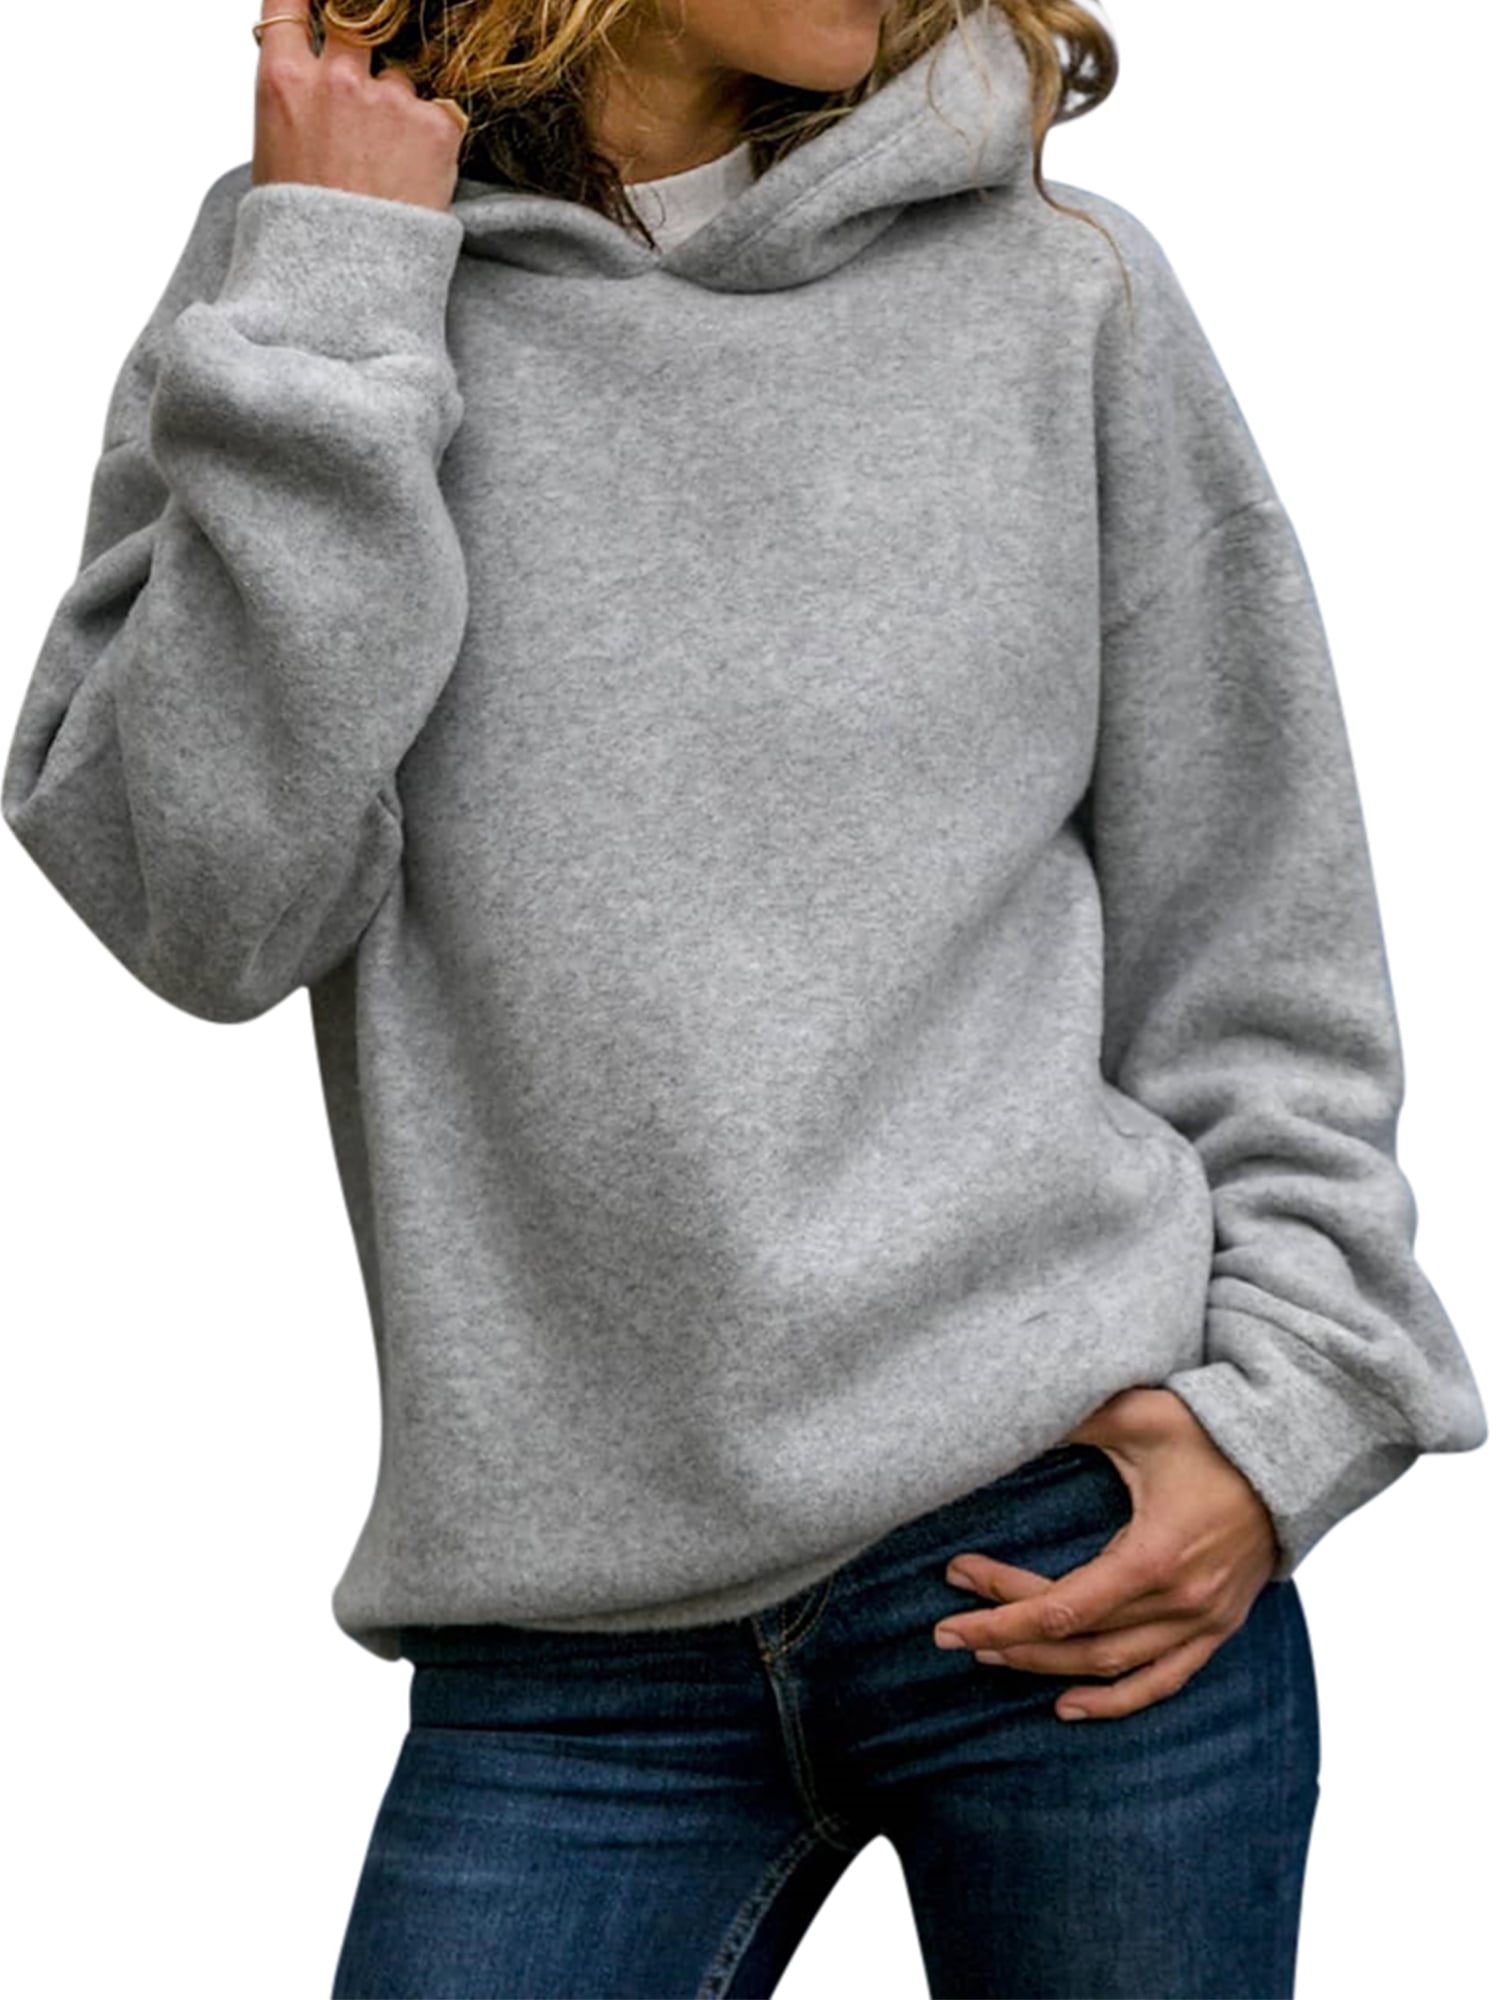 HiMONE - Vintage Winter Pullover Hoodie Fleece Hip Hop Sweatshirt For ...